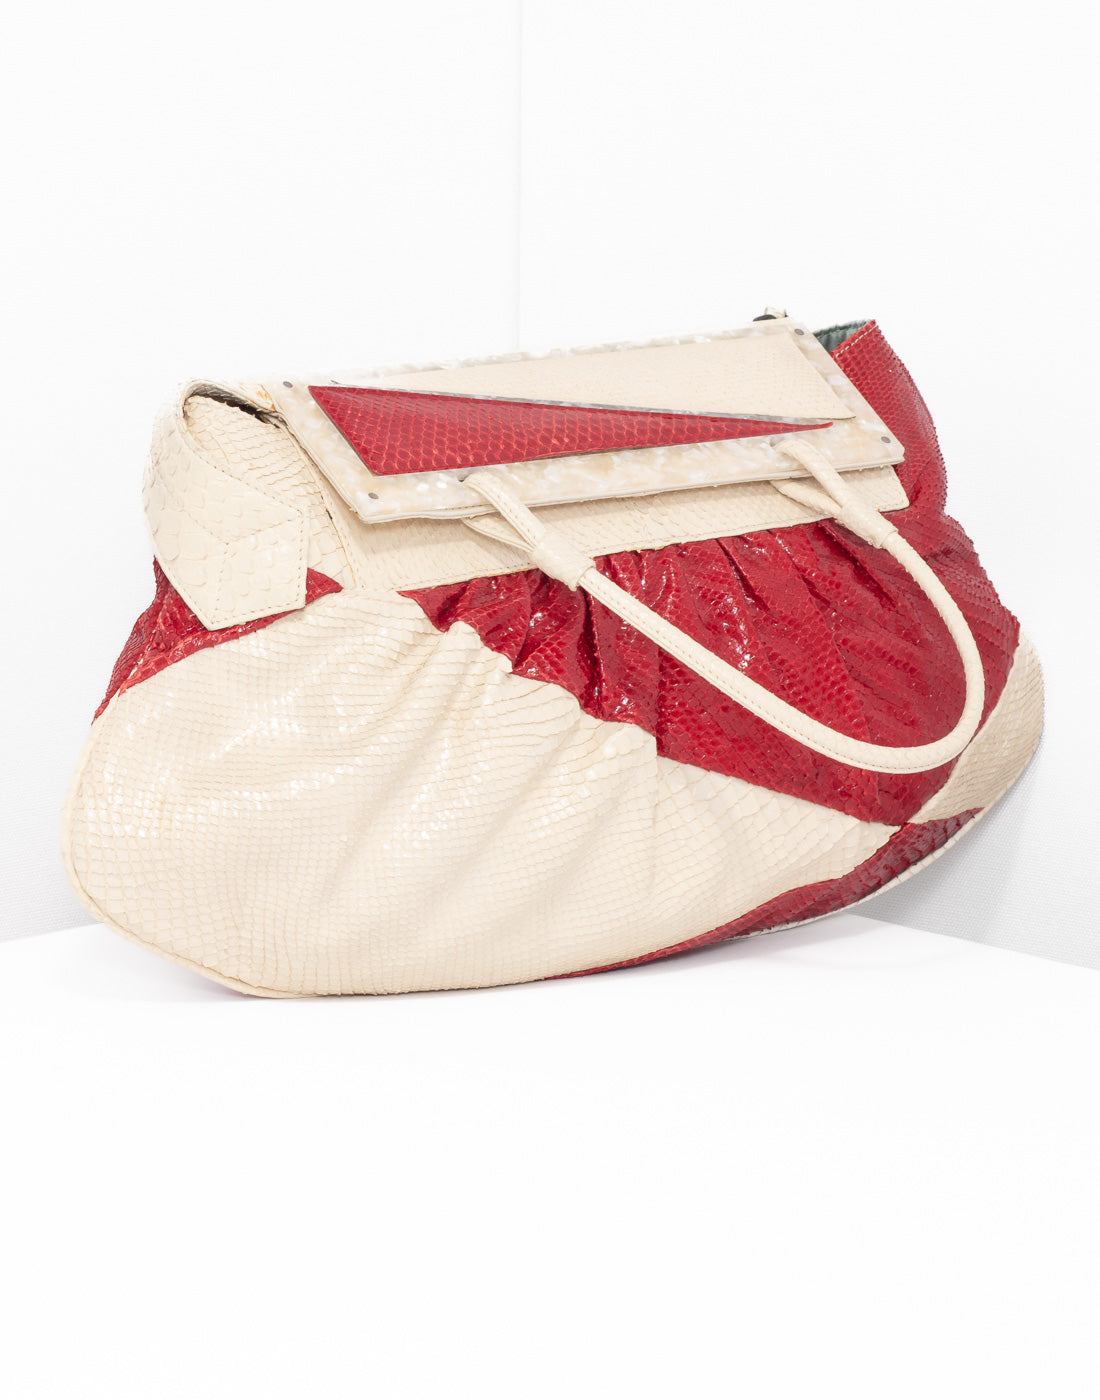 Vintage Fendi Python skin cream and red shoulder bag